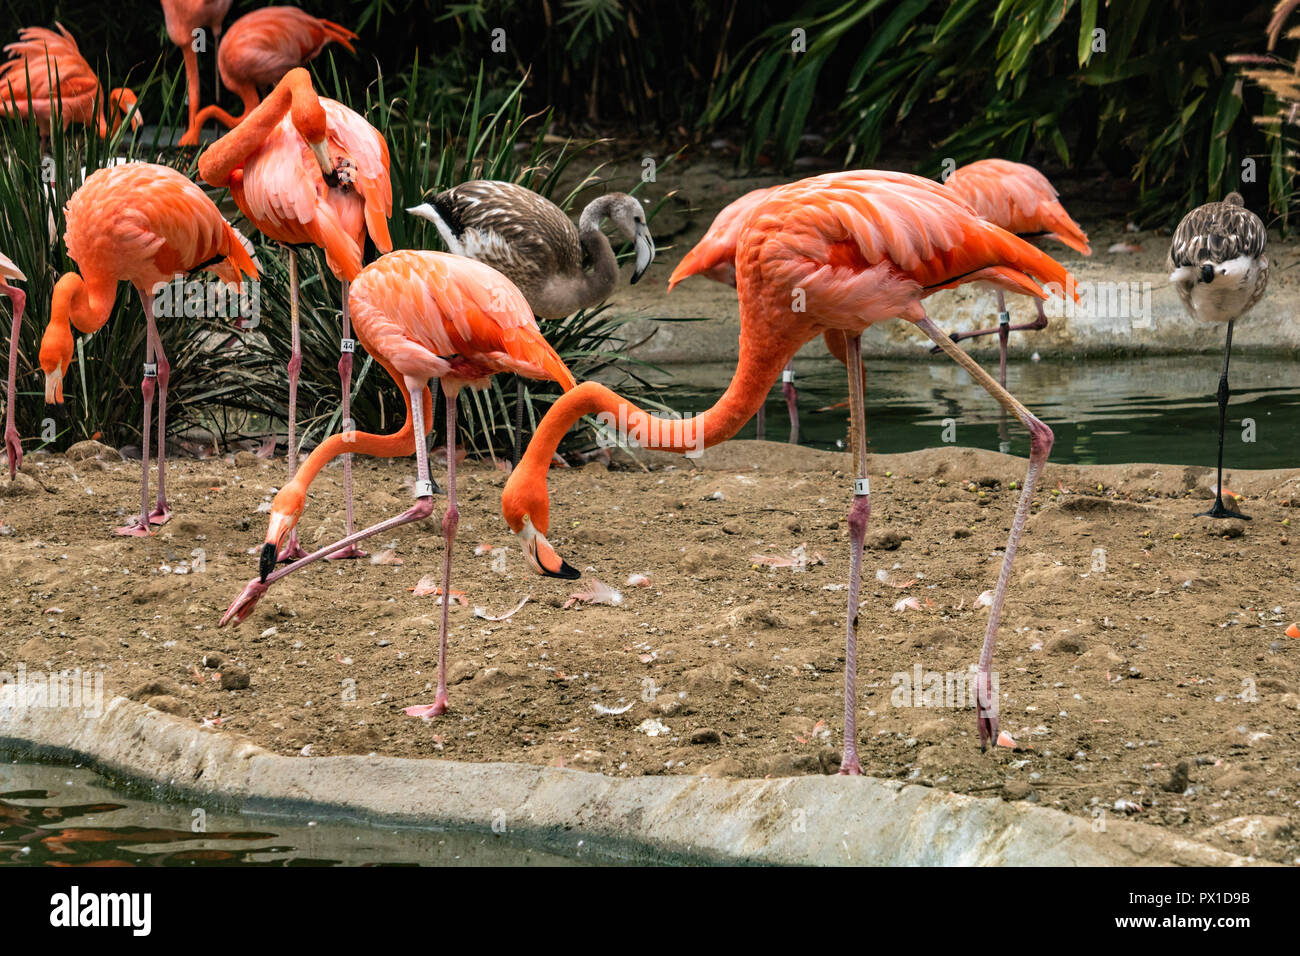 Gruppe von farbigen erwachsenen Flamingos und 2 junge Flamingos neben einem Teich, einige selbst pflegen sind zentrale Flamingo, starrte auf die ... Stockfoto